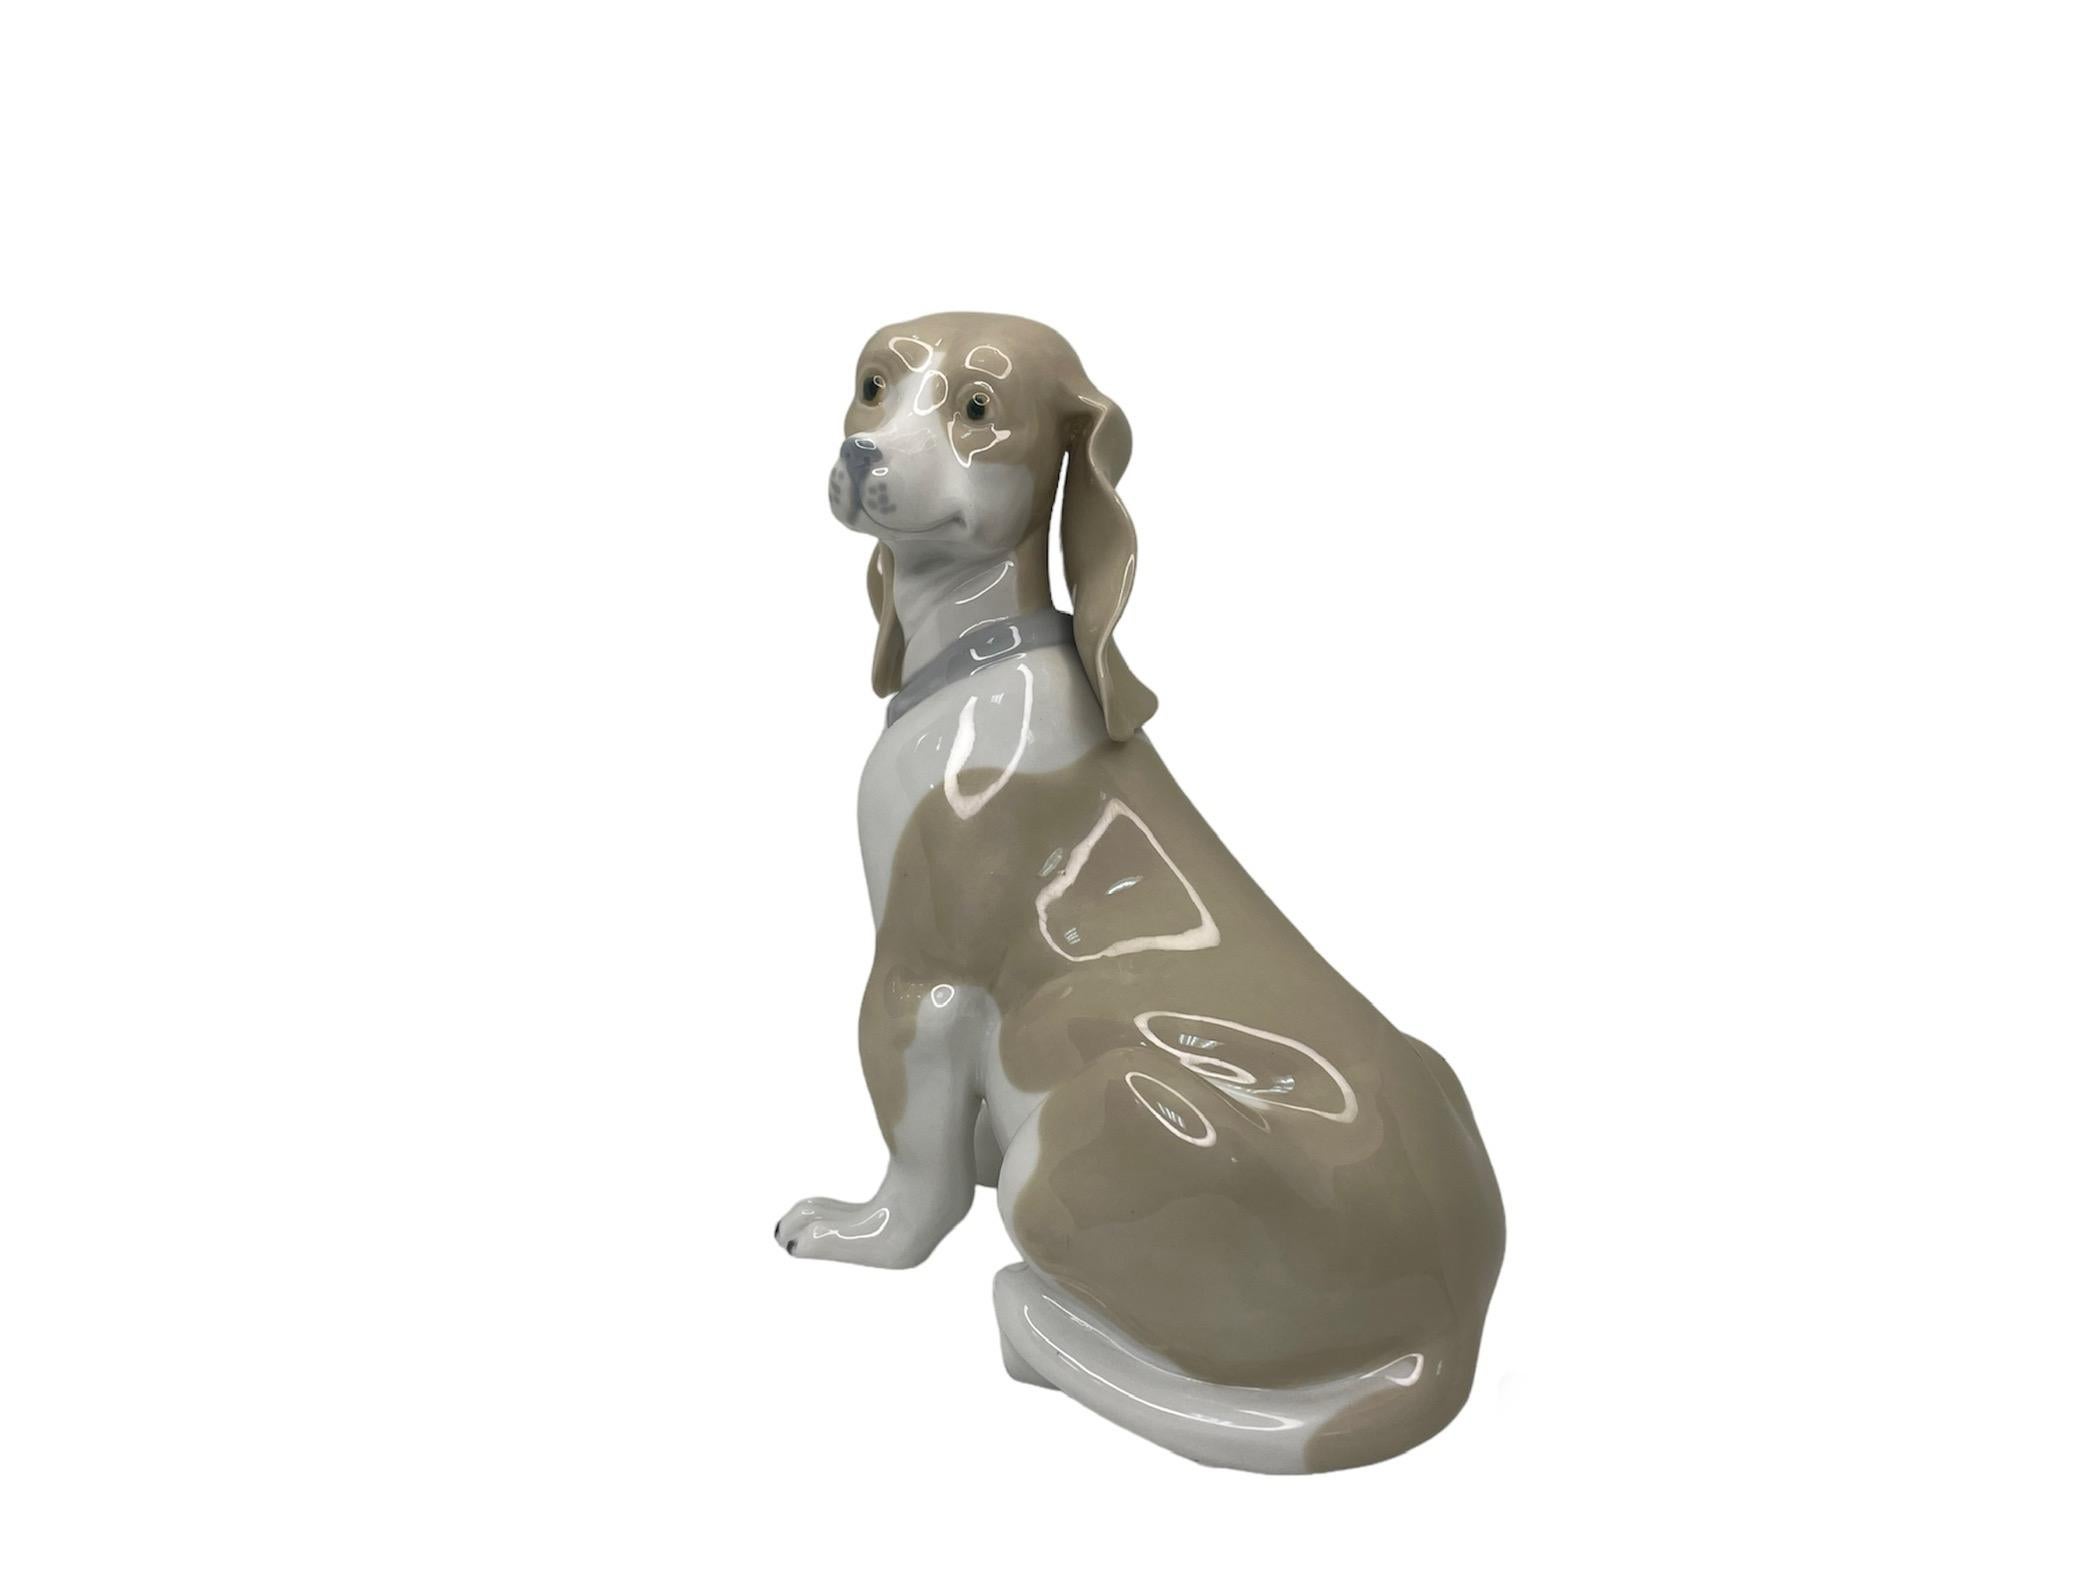 Spanish Rex Valencia Porcelain Figurine Of A Hummelwerk Dog For Sale